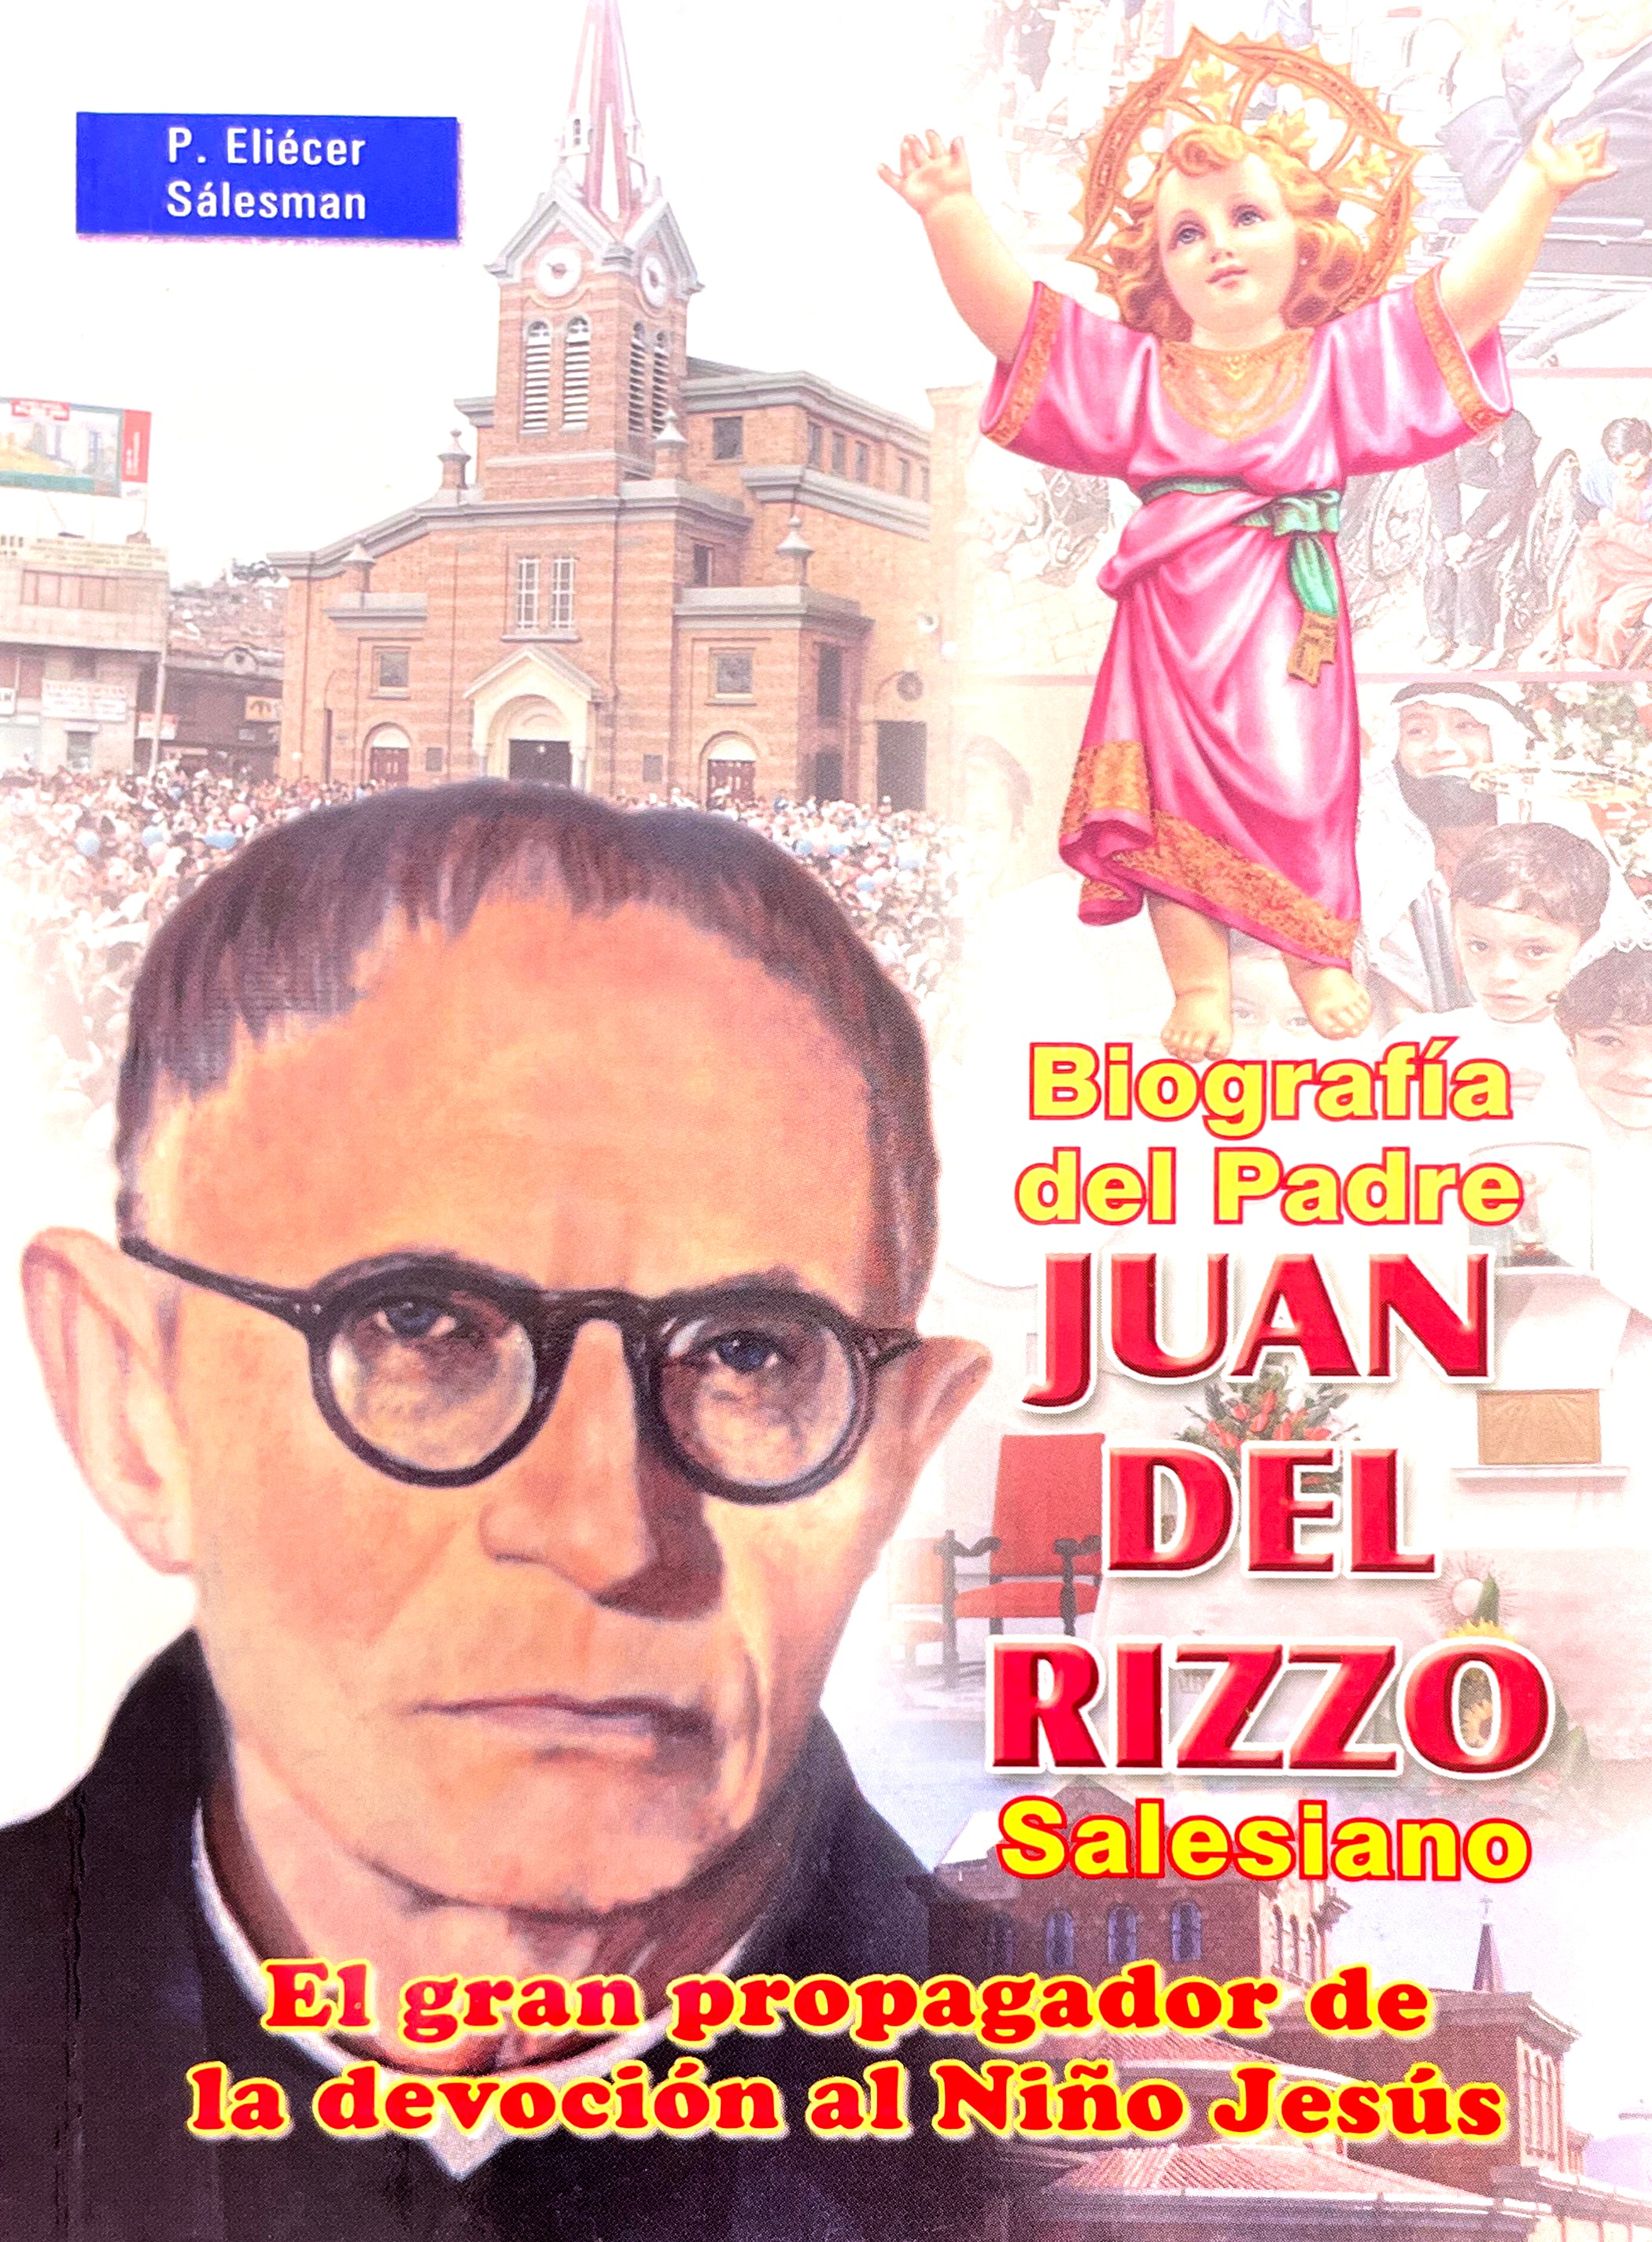 Biografía del Padre Juan Del Rizzo, Salesiano, el gran propagador de la devoción del Divino Niño Jesús